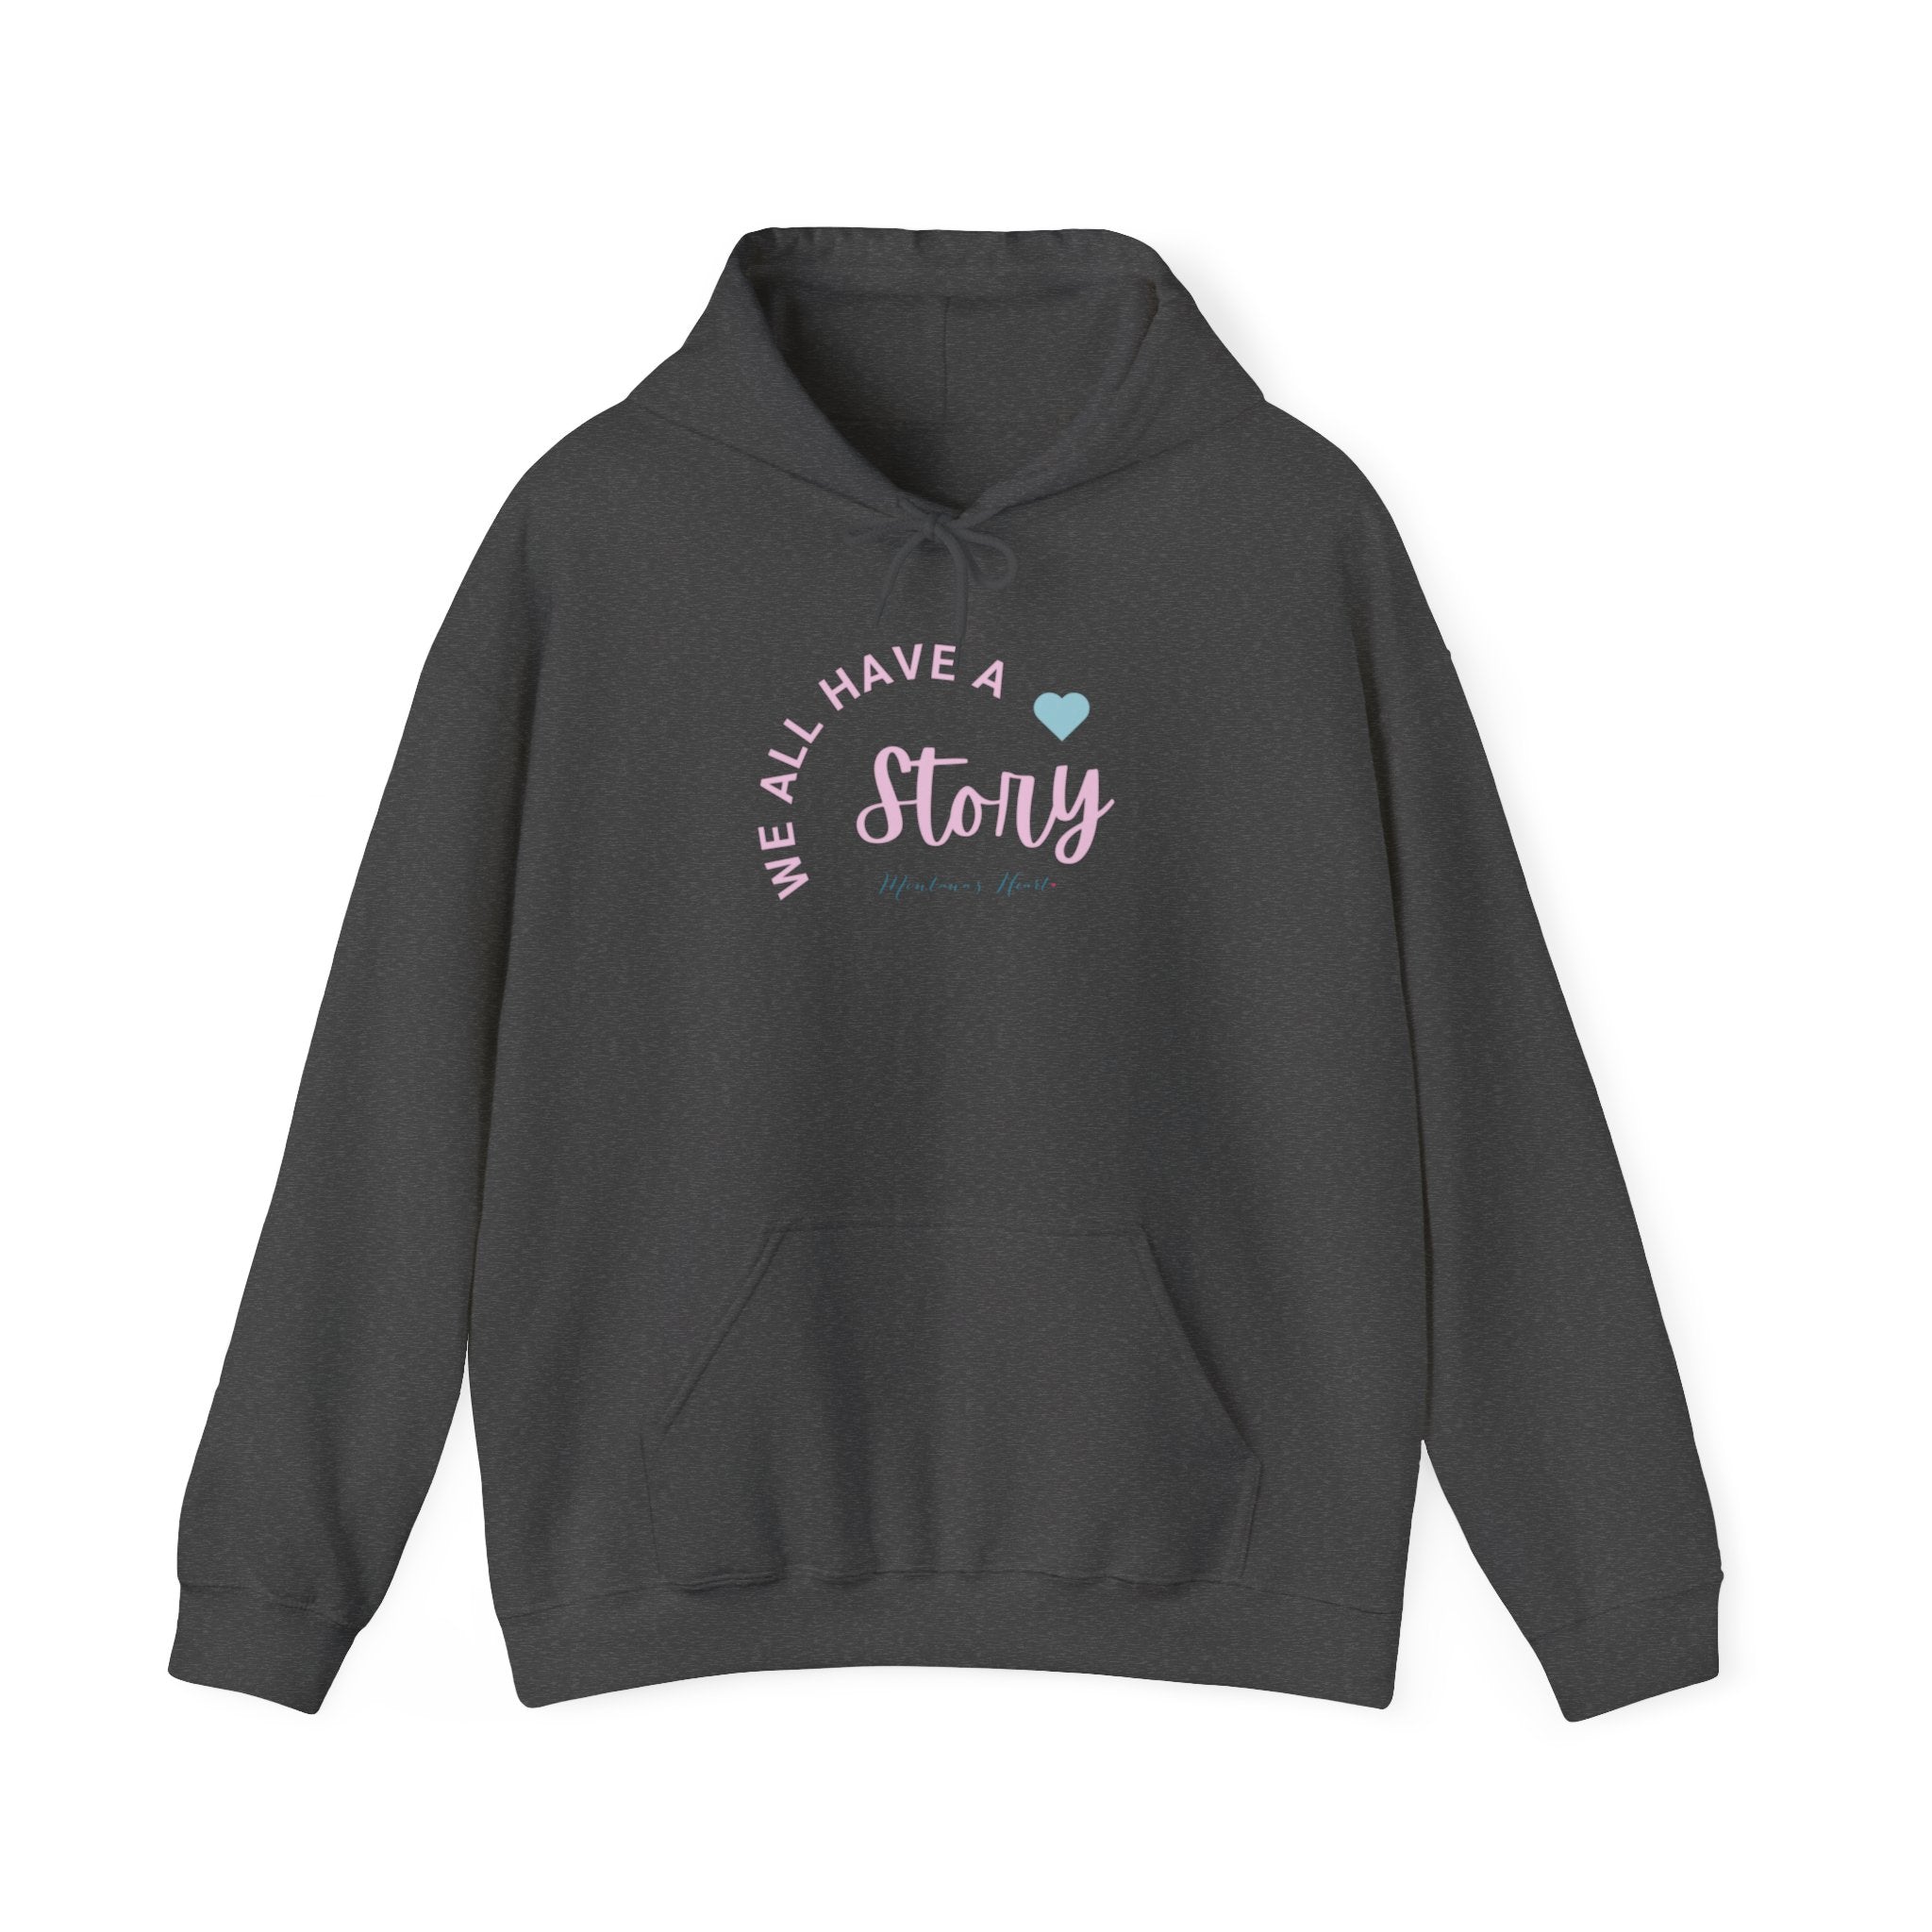 We all have a story, ladies hoodie sweatshirt, Awareness hoodie